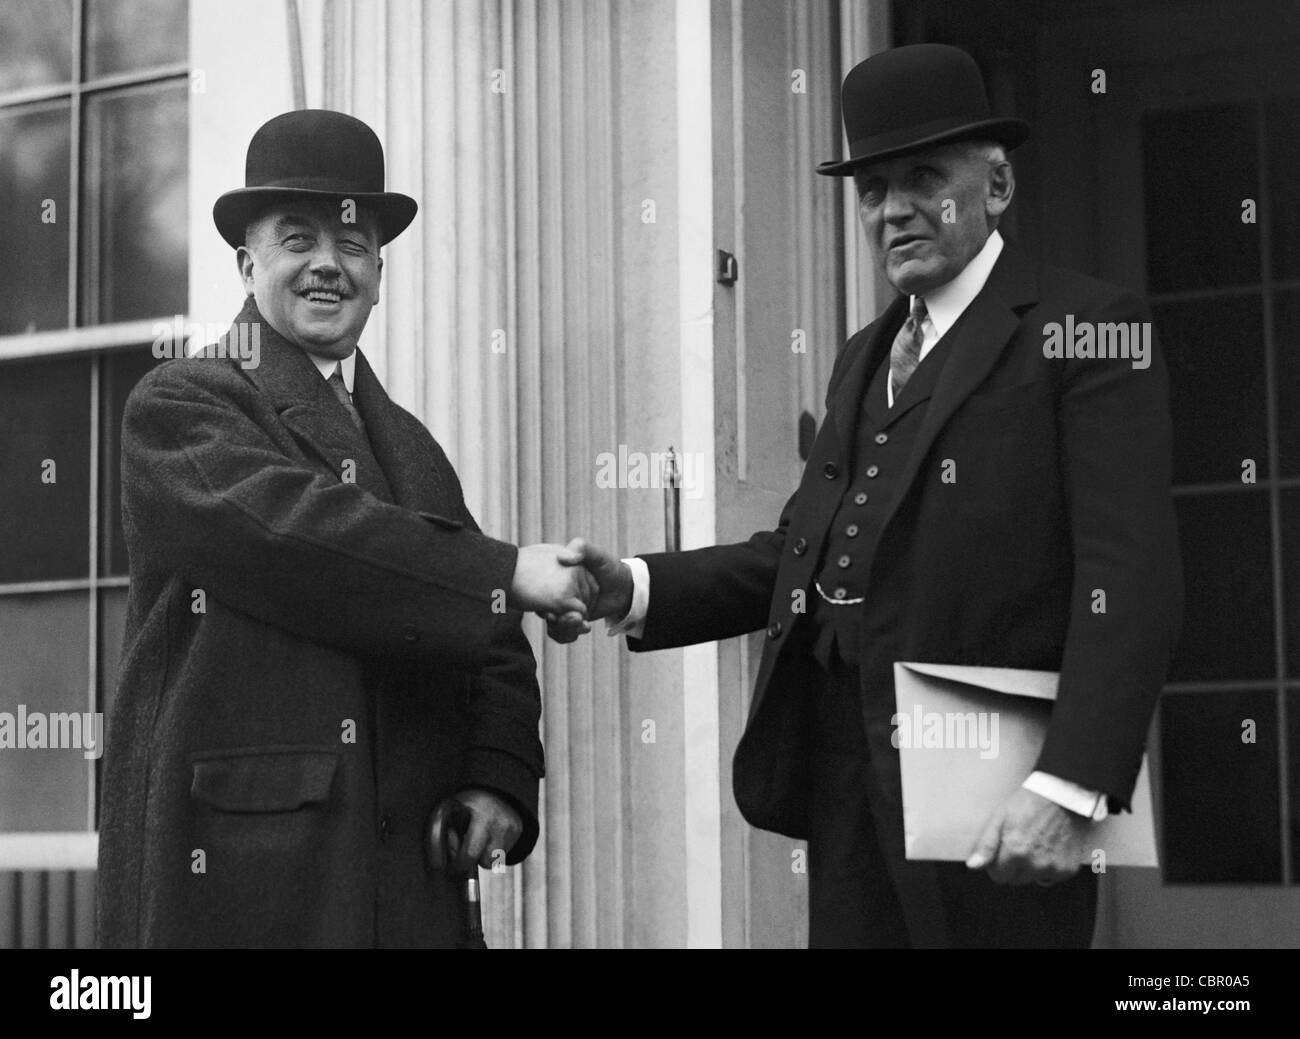 Britische Labour-Politiker Arthur Henderson (links) schüttelt Hände mit US-Außenminister Frank Billings Kellogg (rechts) während einer Reise in die USA im Jahr 1925. Stockfoto